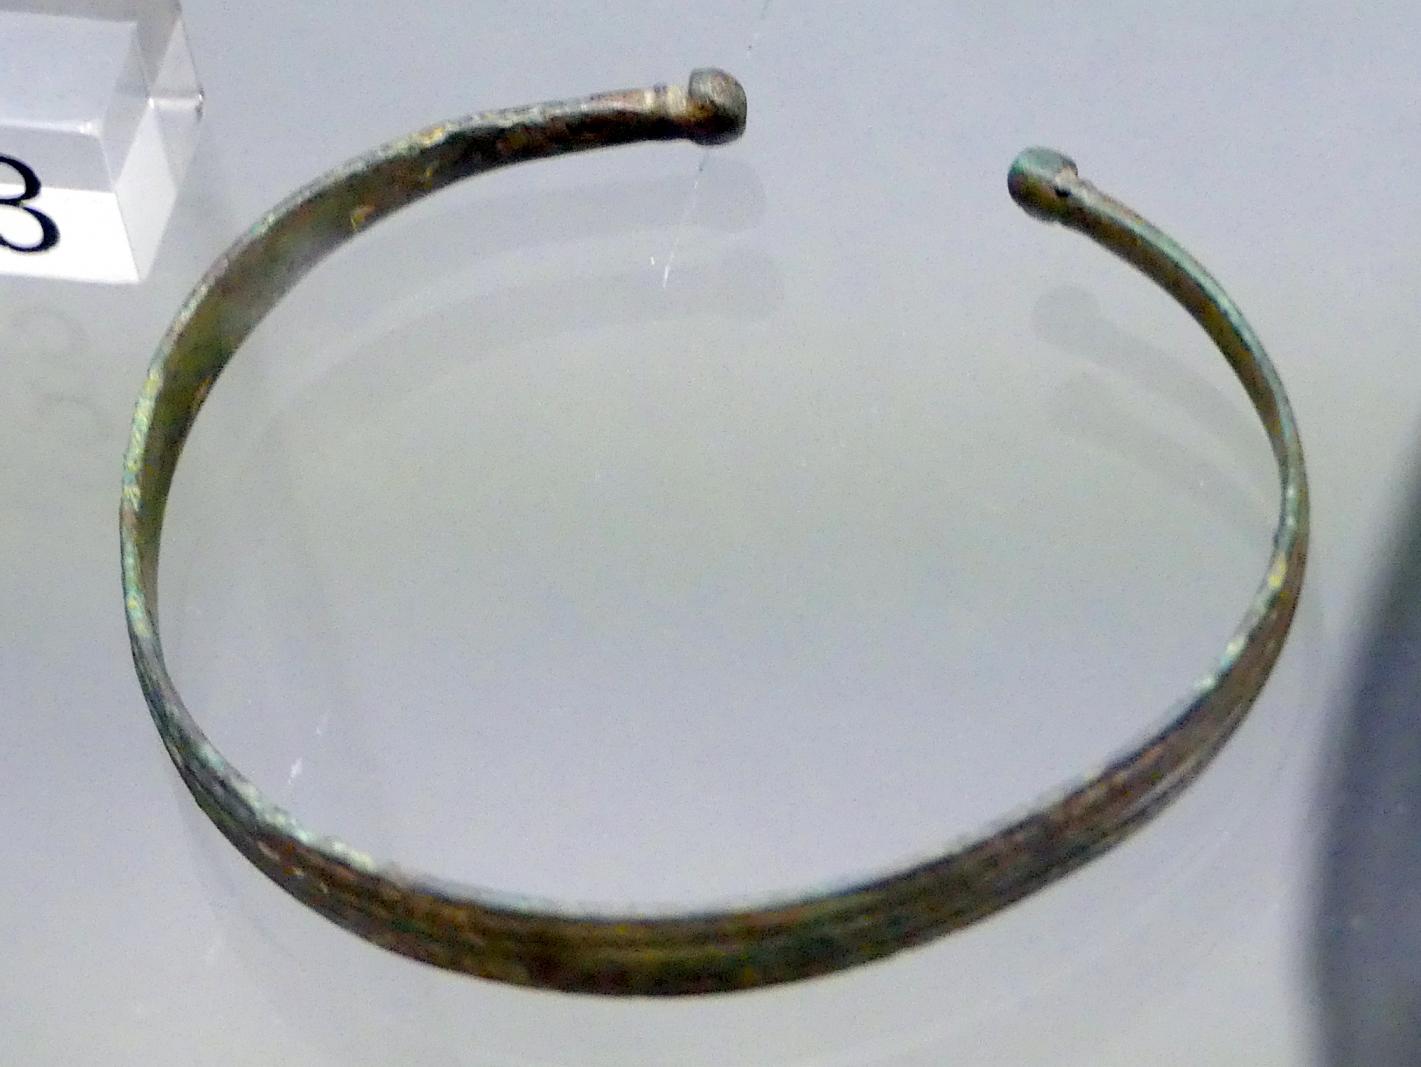 Armband, Hallstattzeit, 700 - 200 v. Chr., Bild 1/2